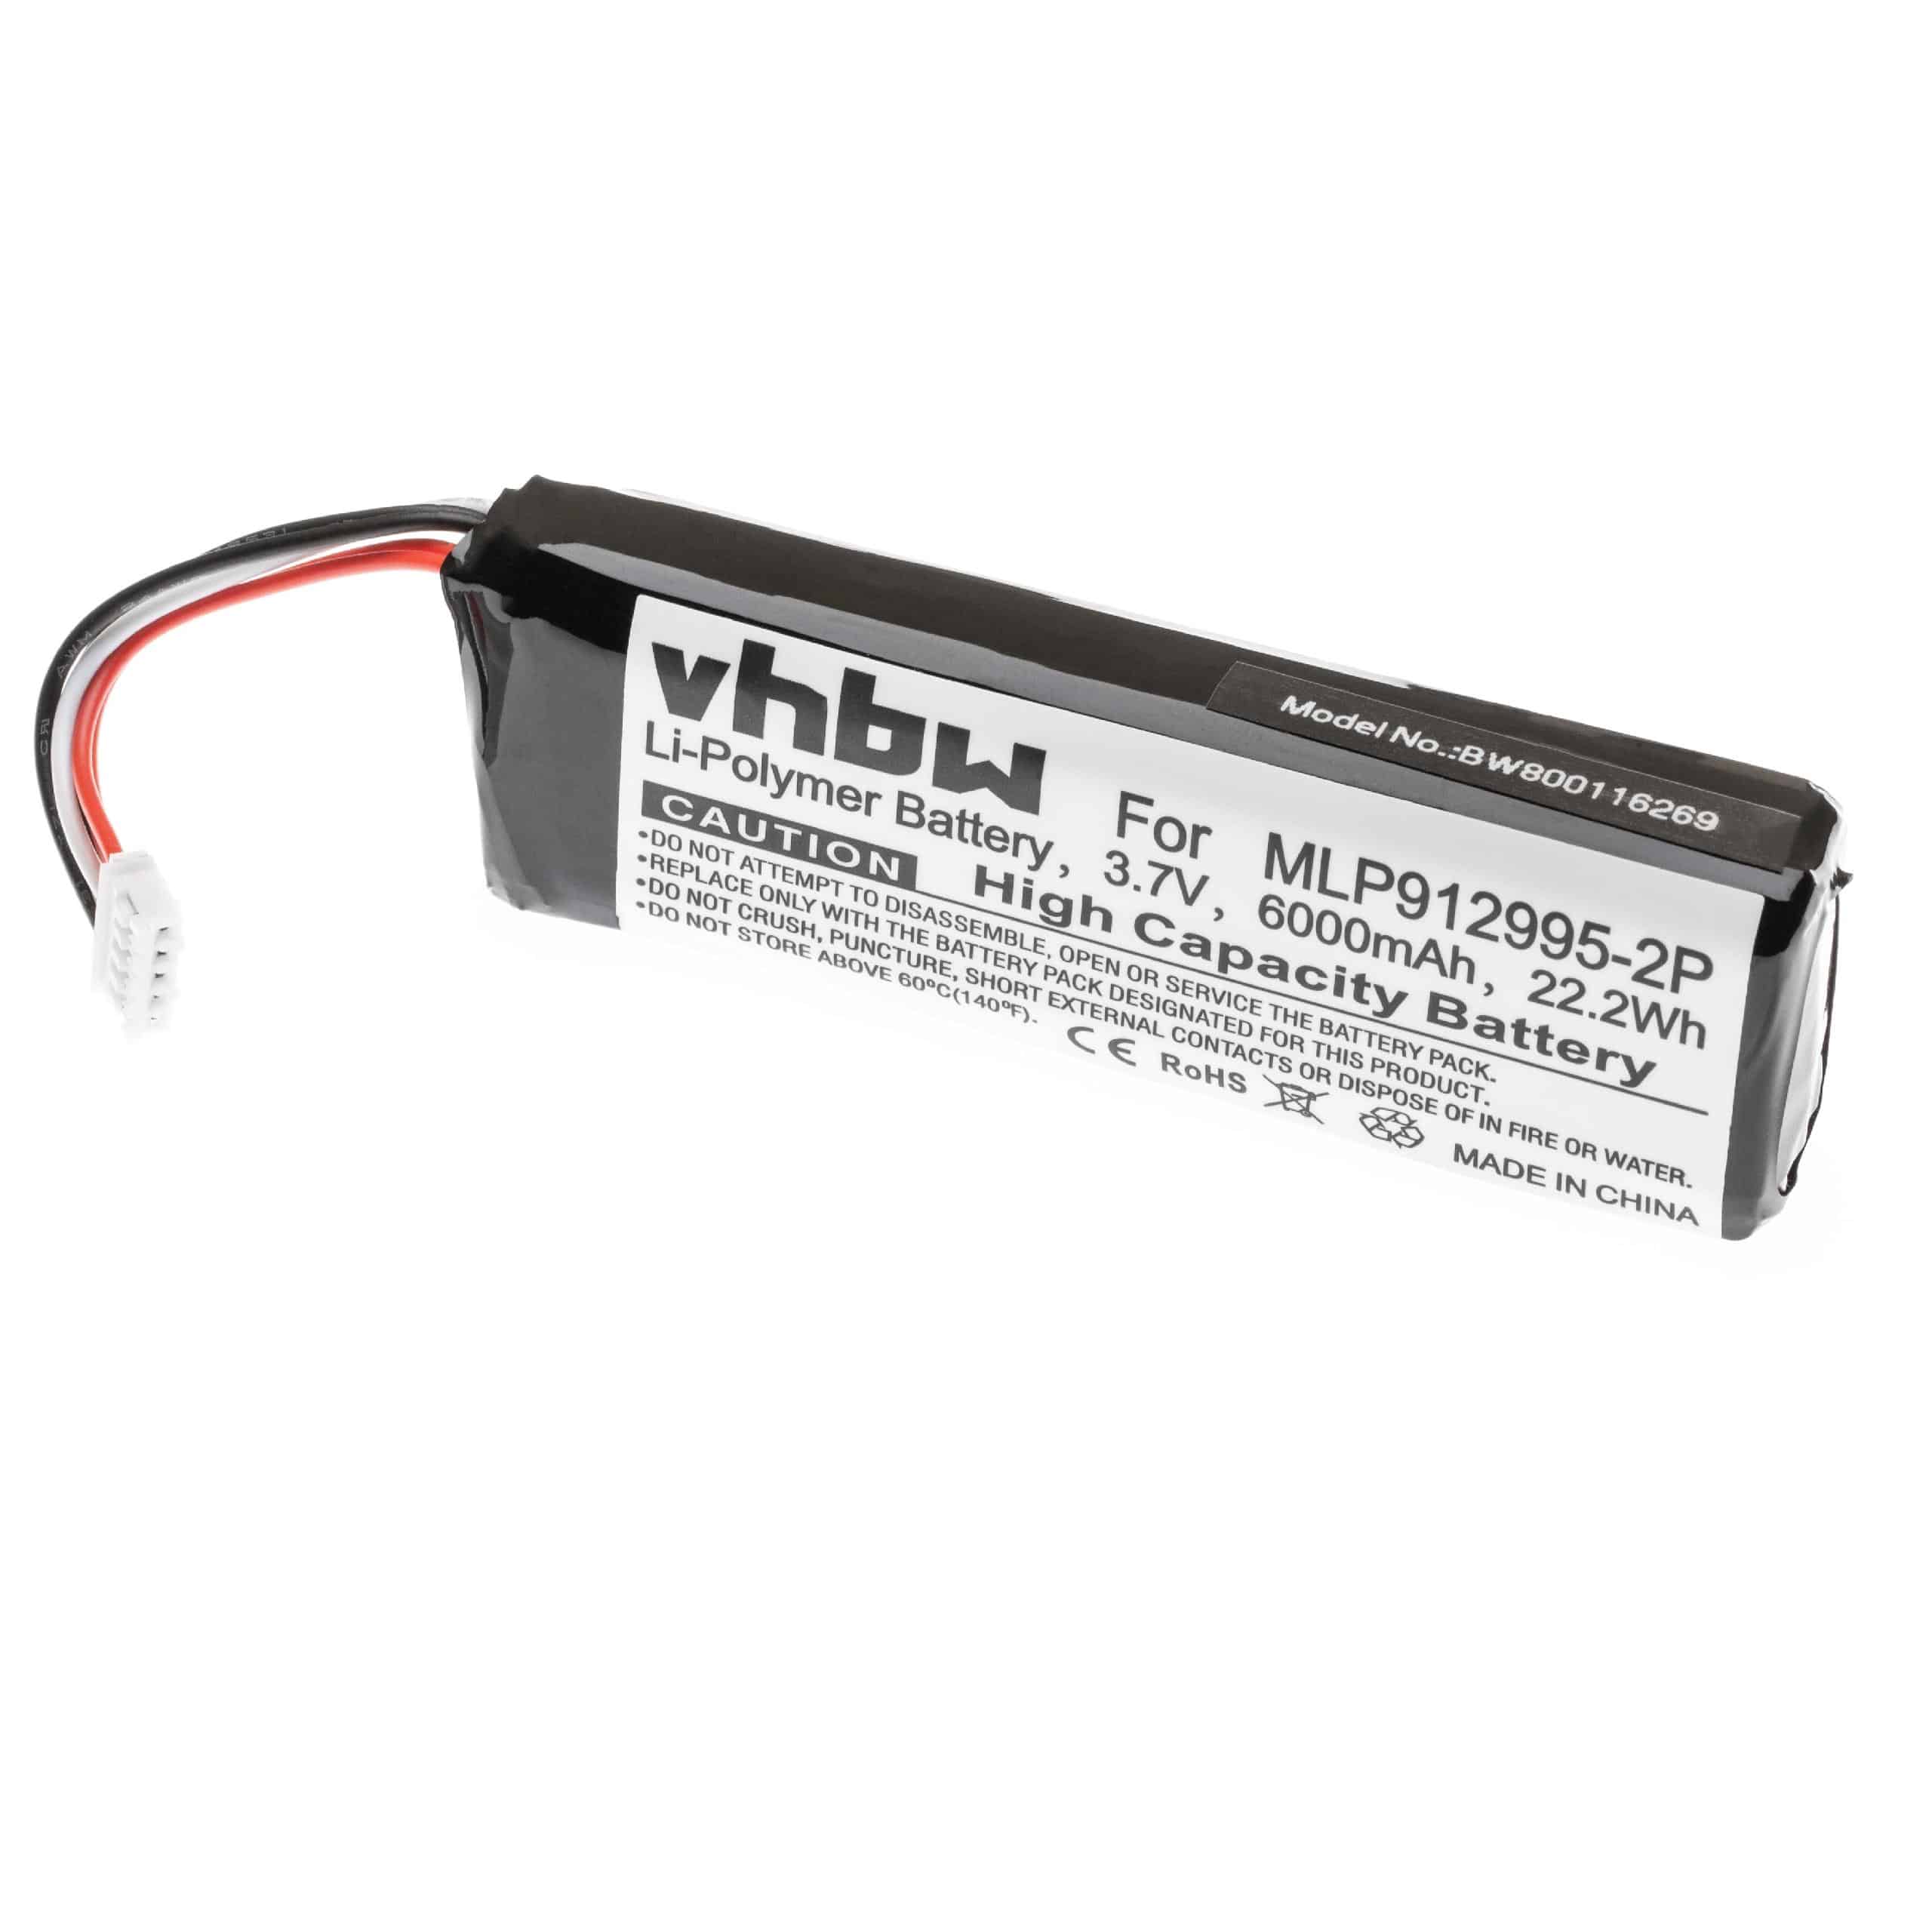 Akumulator do głośnika JBL zamiennik JBL MLP912995-2P - LiPo 6000mAh